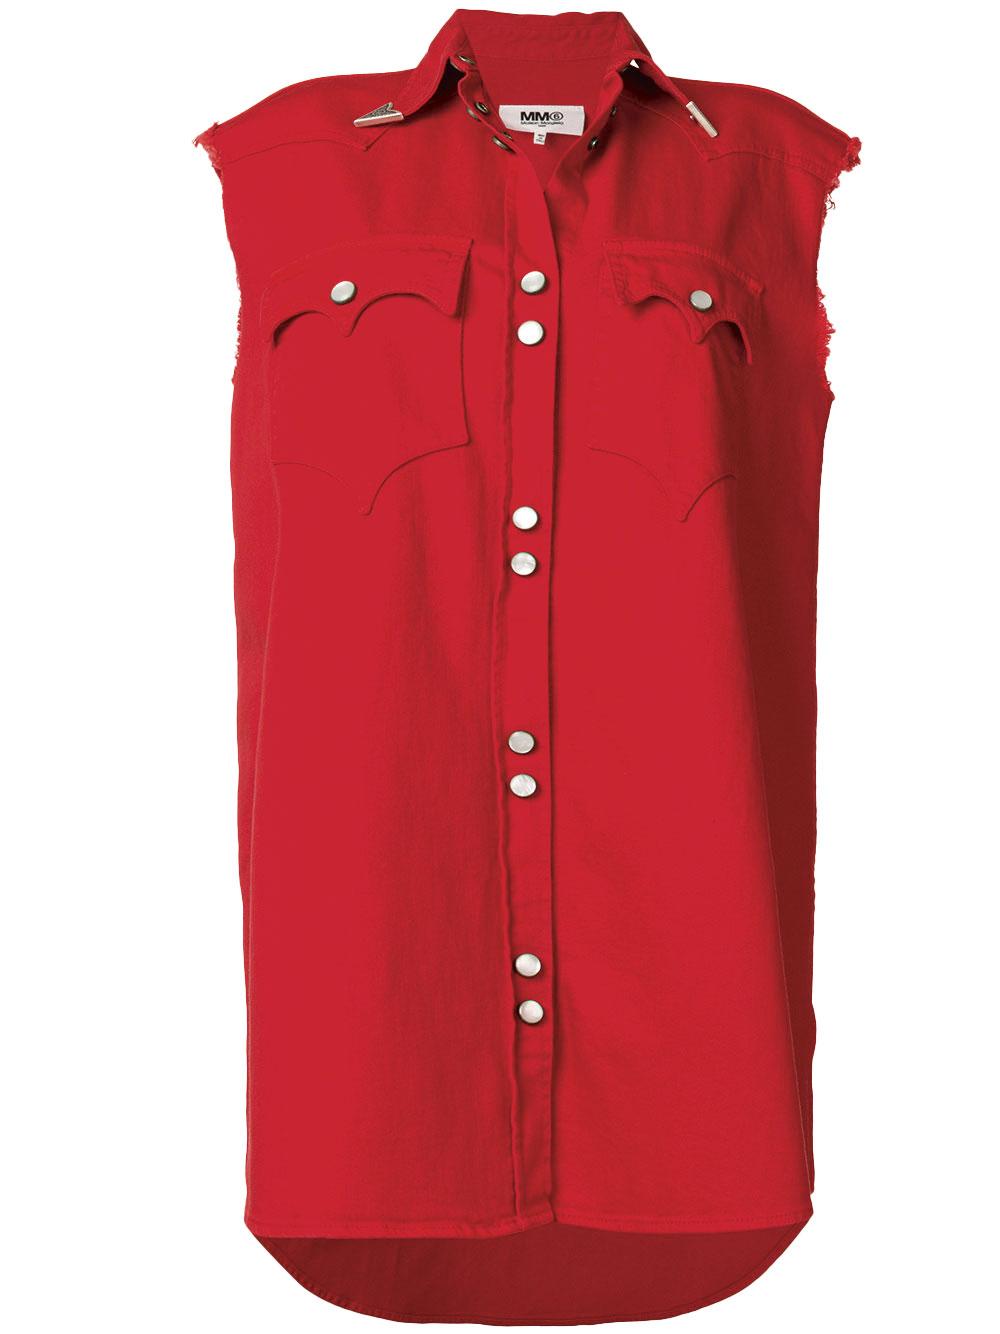 Robe-chemise d'inspiration  western en jeans de coton Stretch rouge,  MM6 Maison Margiela, 395 euros